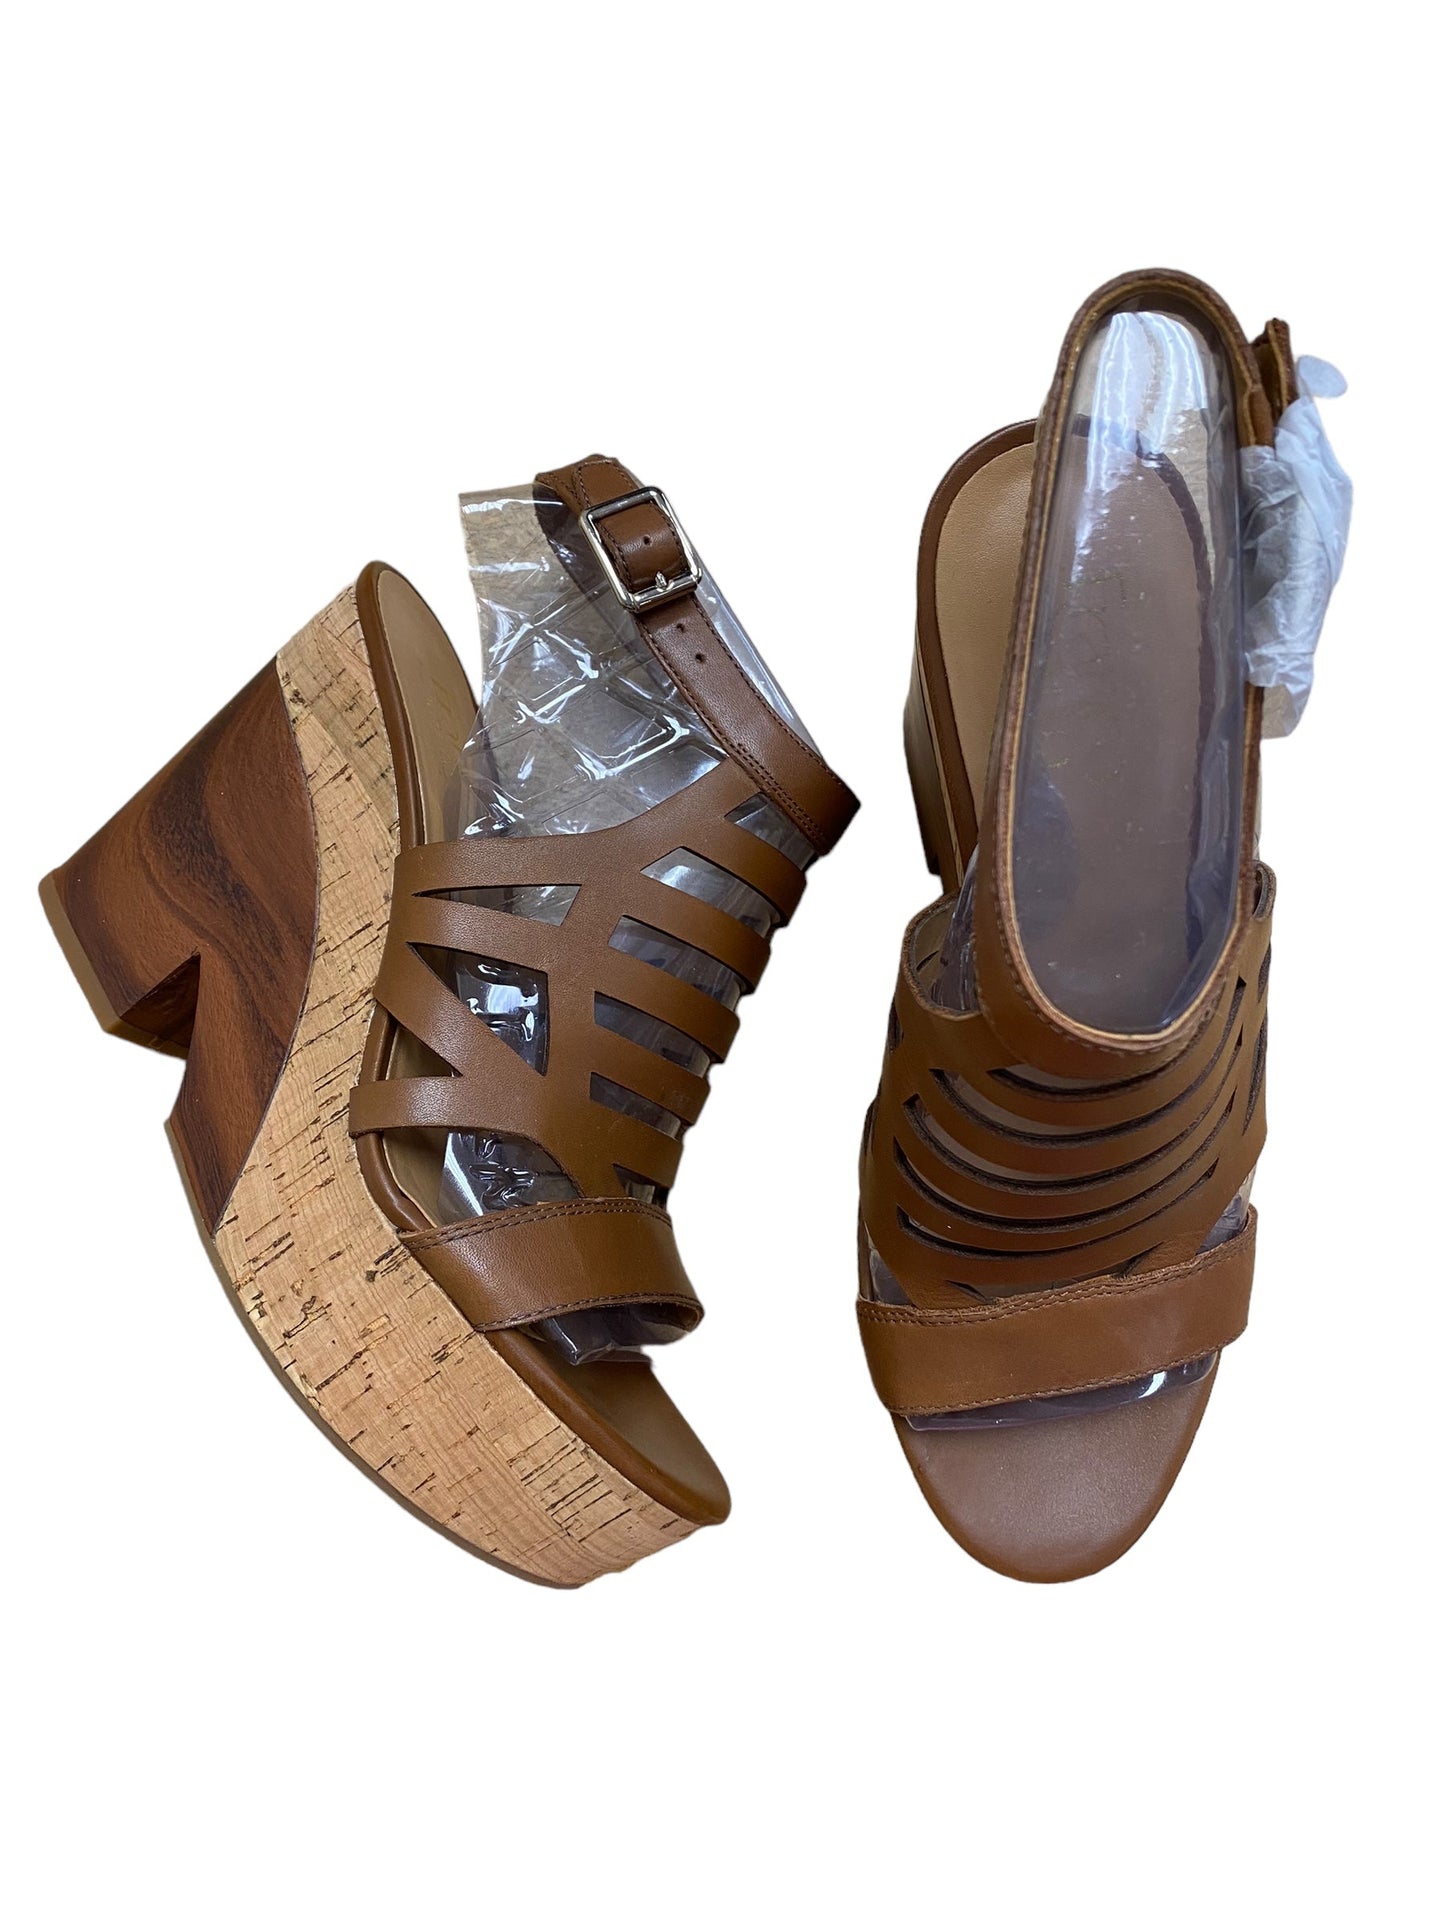 Brown Shoes Heels Block Franco Sarto, Size 7